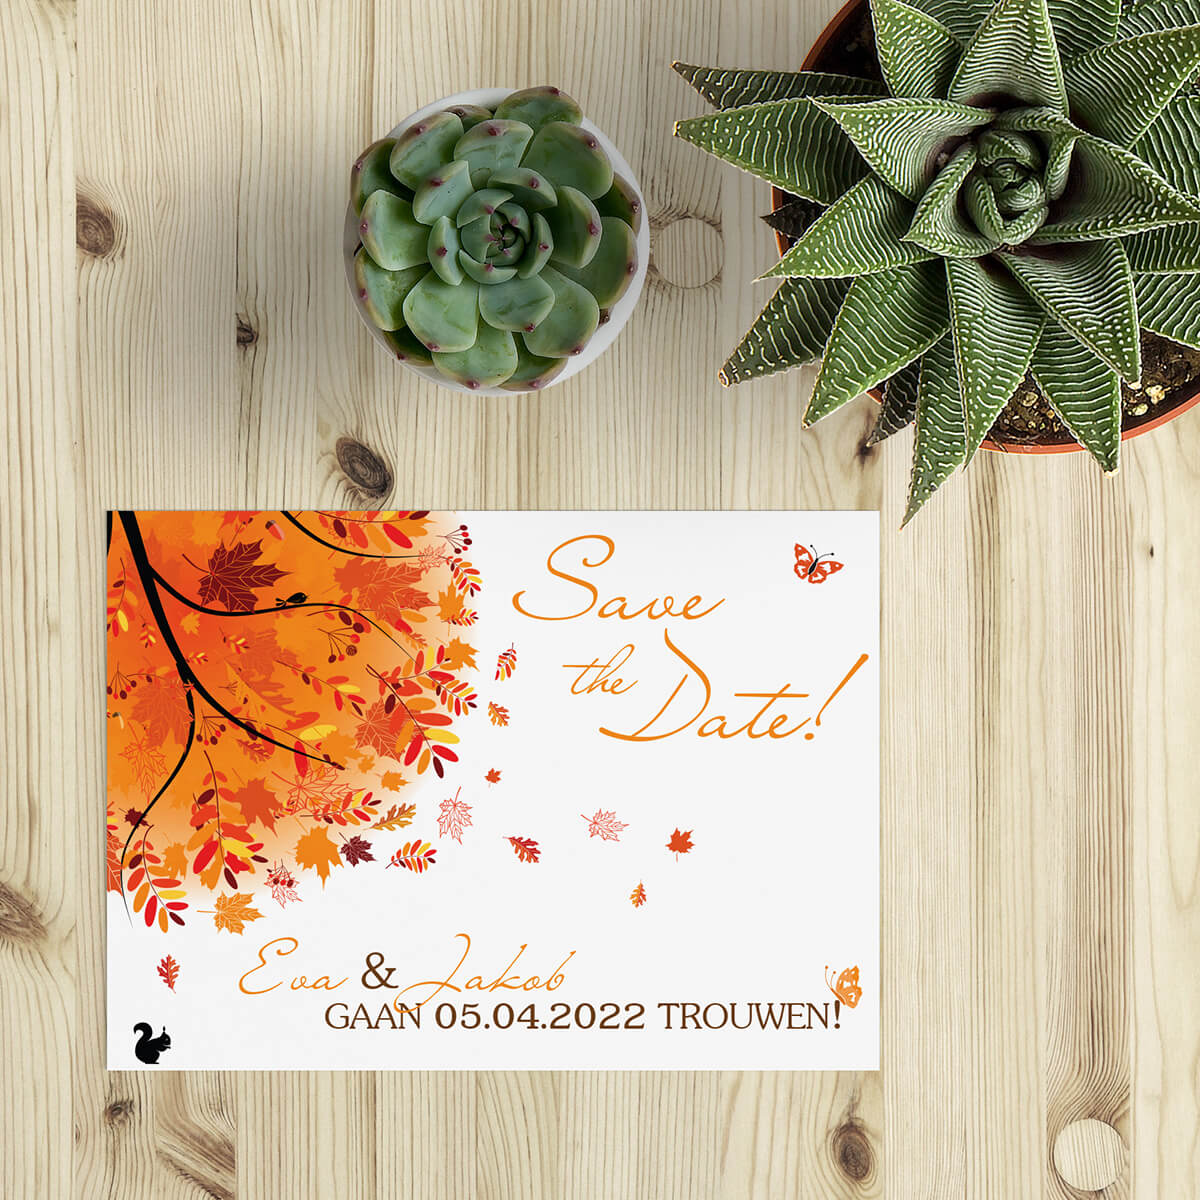 Save the date kaart Herfst is ontworpen als vrolijk kaartje met herfst thema. Een vrolijke boom in herfst-tinten geeft de juiste versiering.